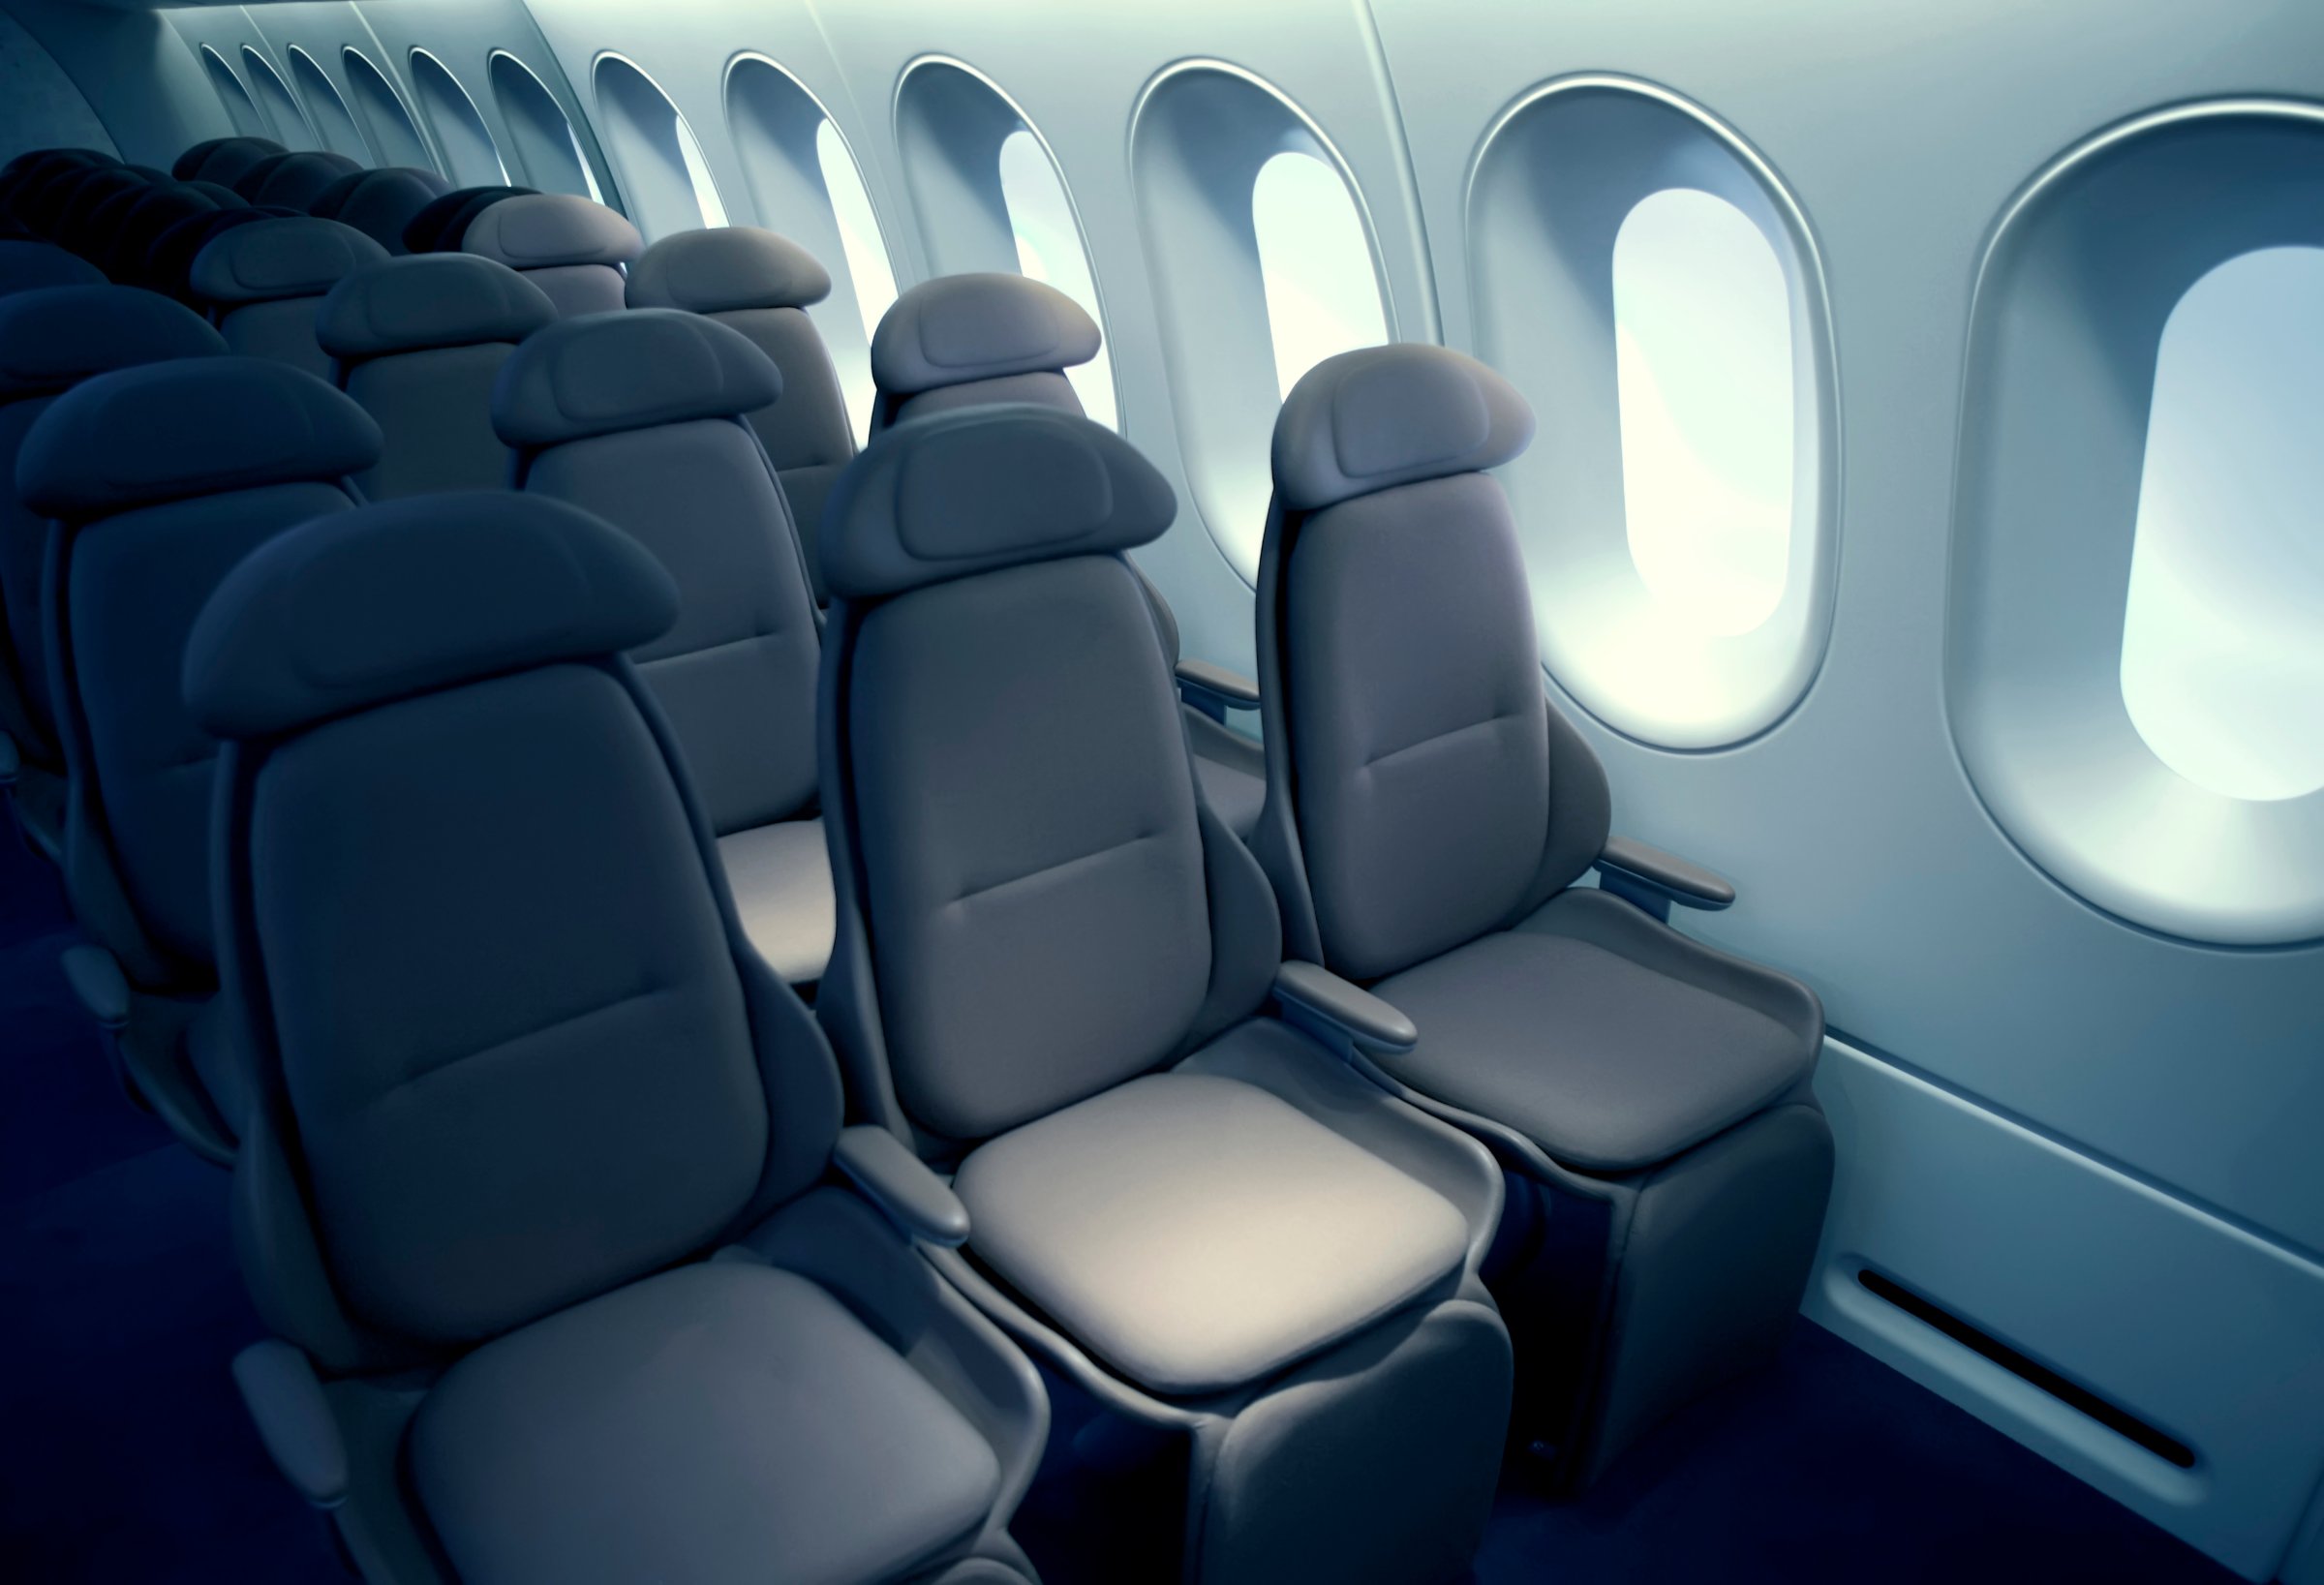 Empty airplane seats